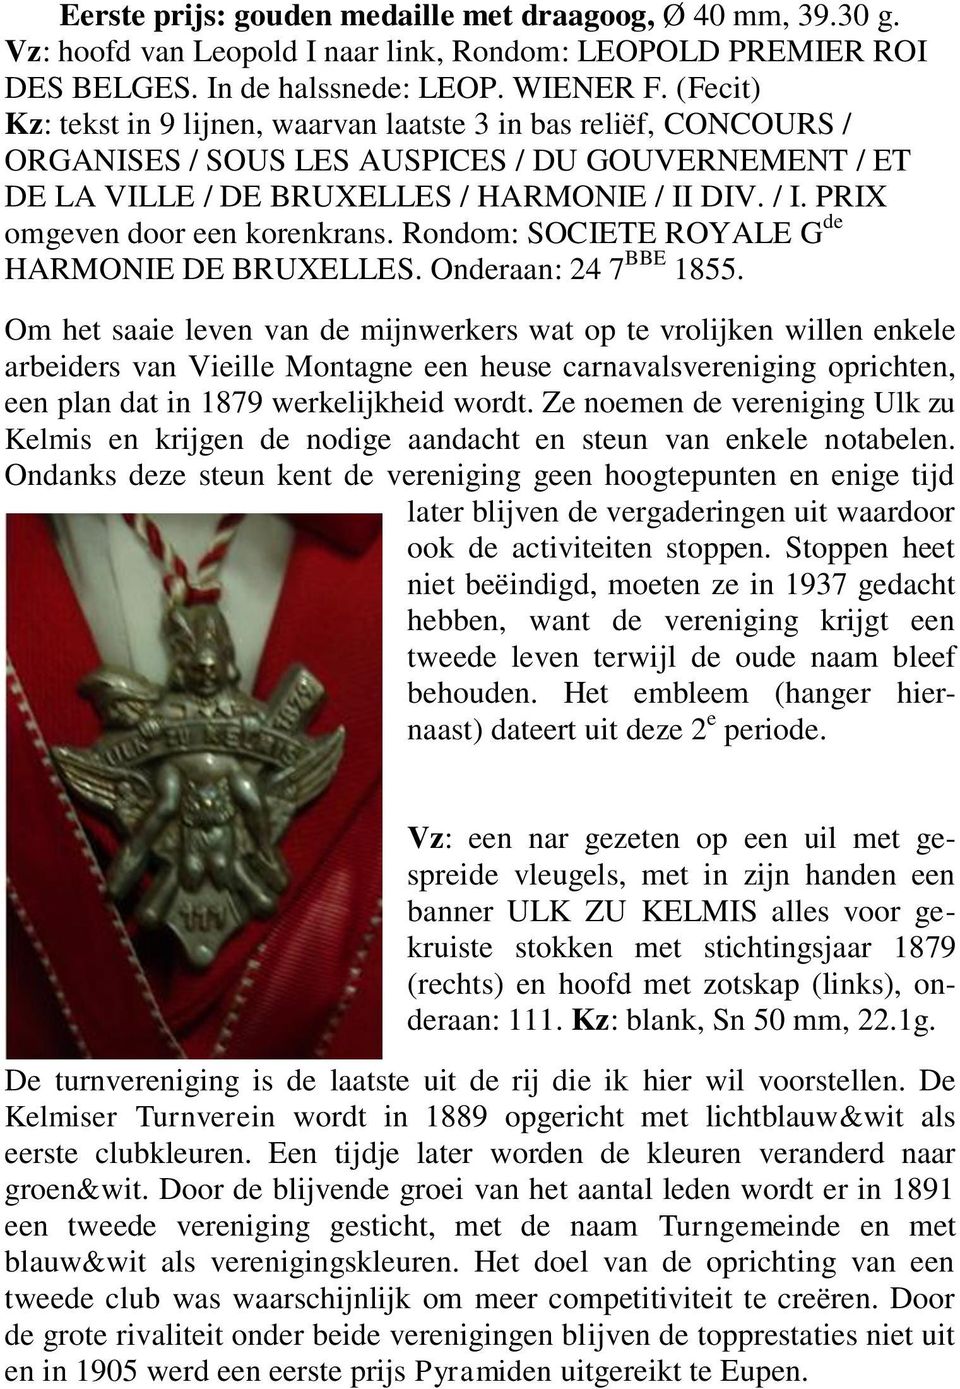 DIV. / I. PRIX omgeven door een korenkrans. Rondom: SOCIETE ROYALE G de HARMONIE DE BRUXELLES. Onderaan: 24 7 BBE 1855.